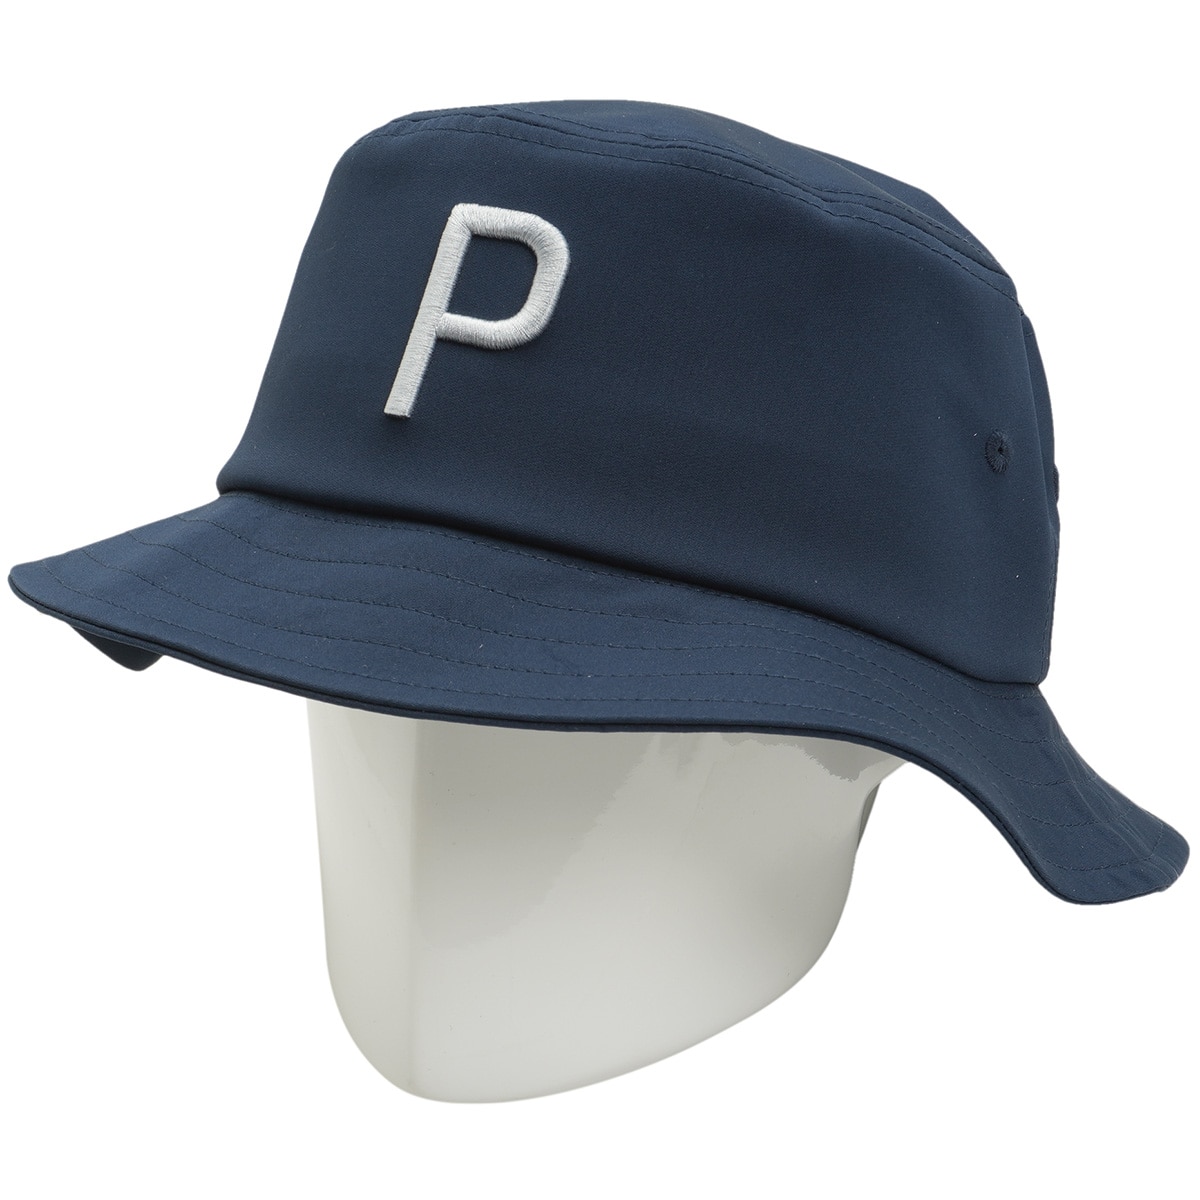 P バケットハット(【男性】その他帽子)|PUMA(プーマ) 024732の通販